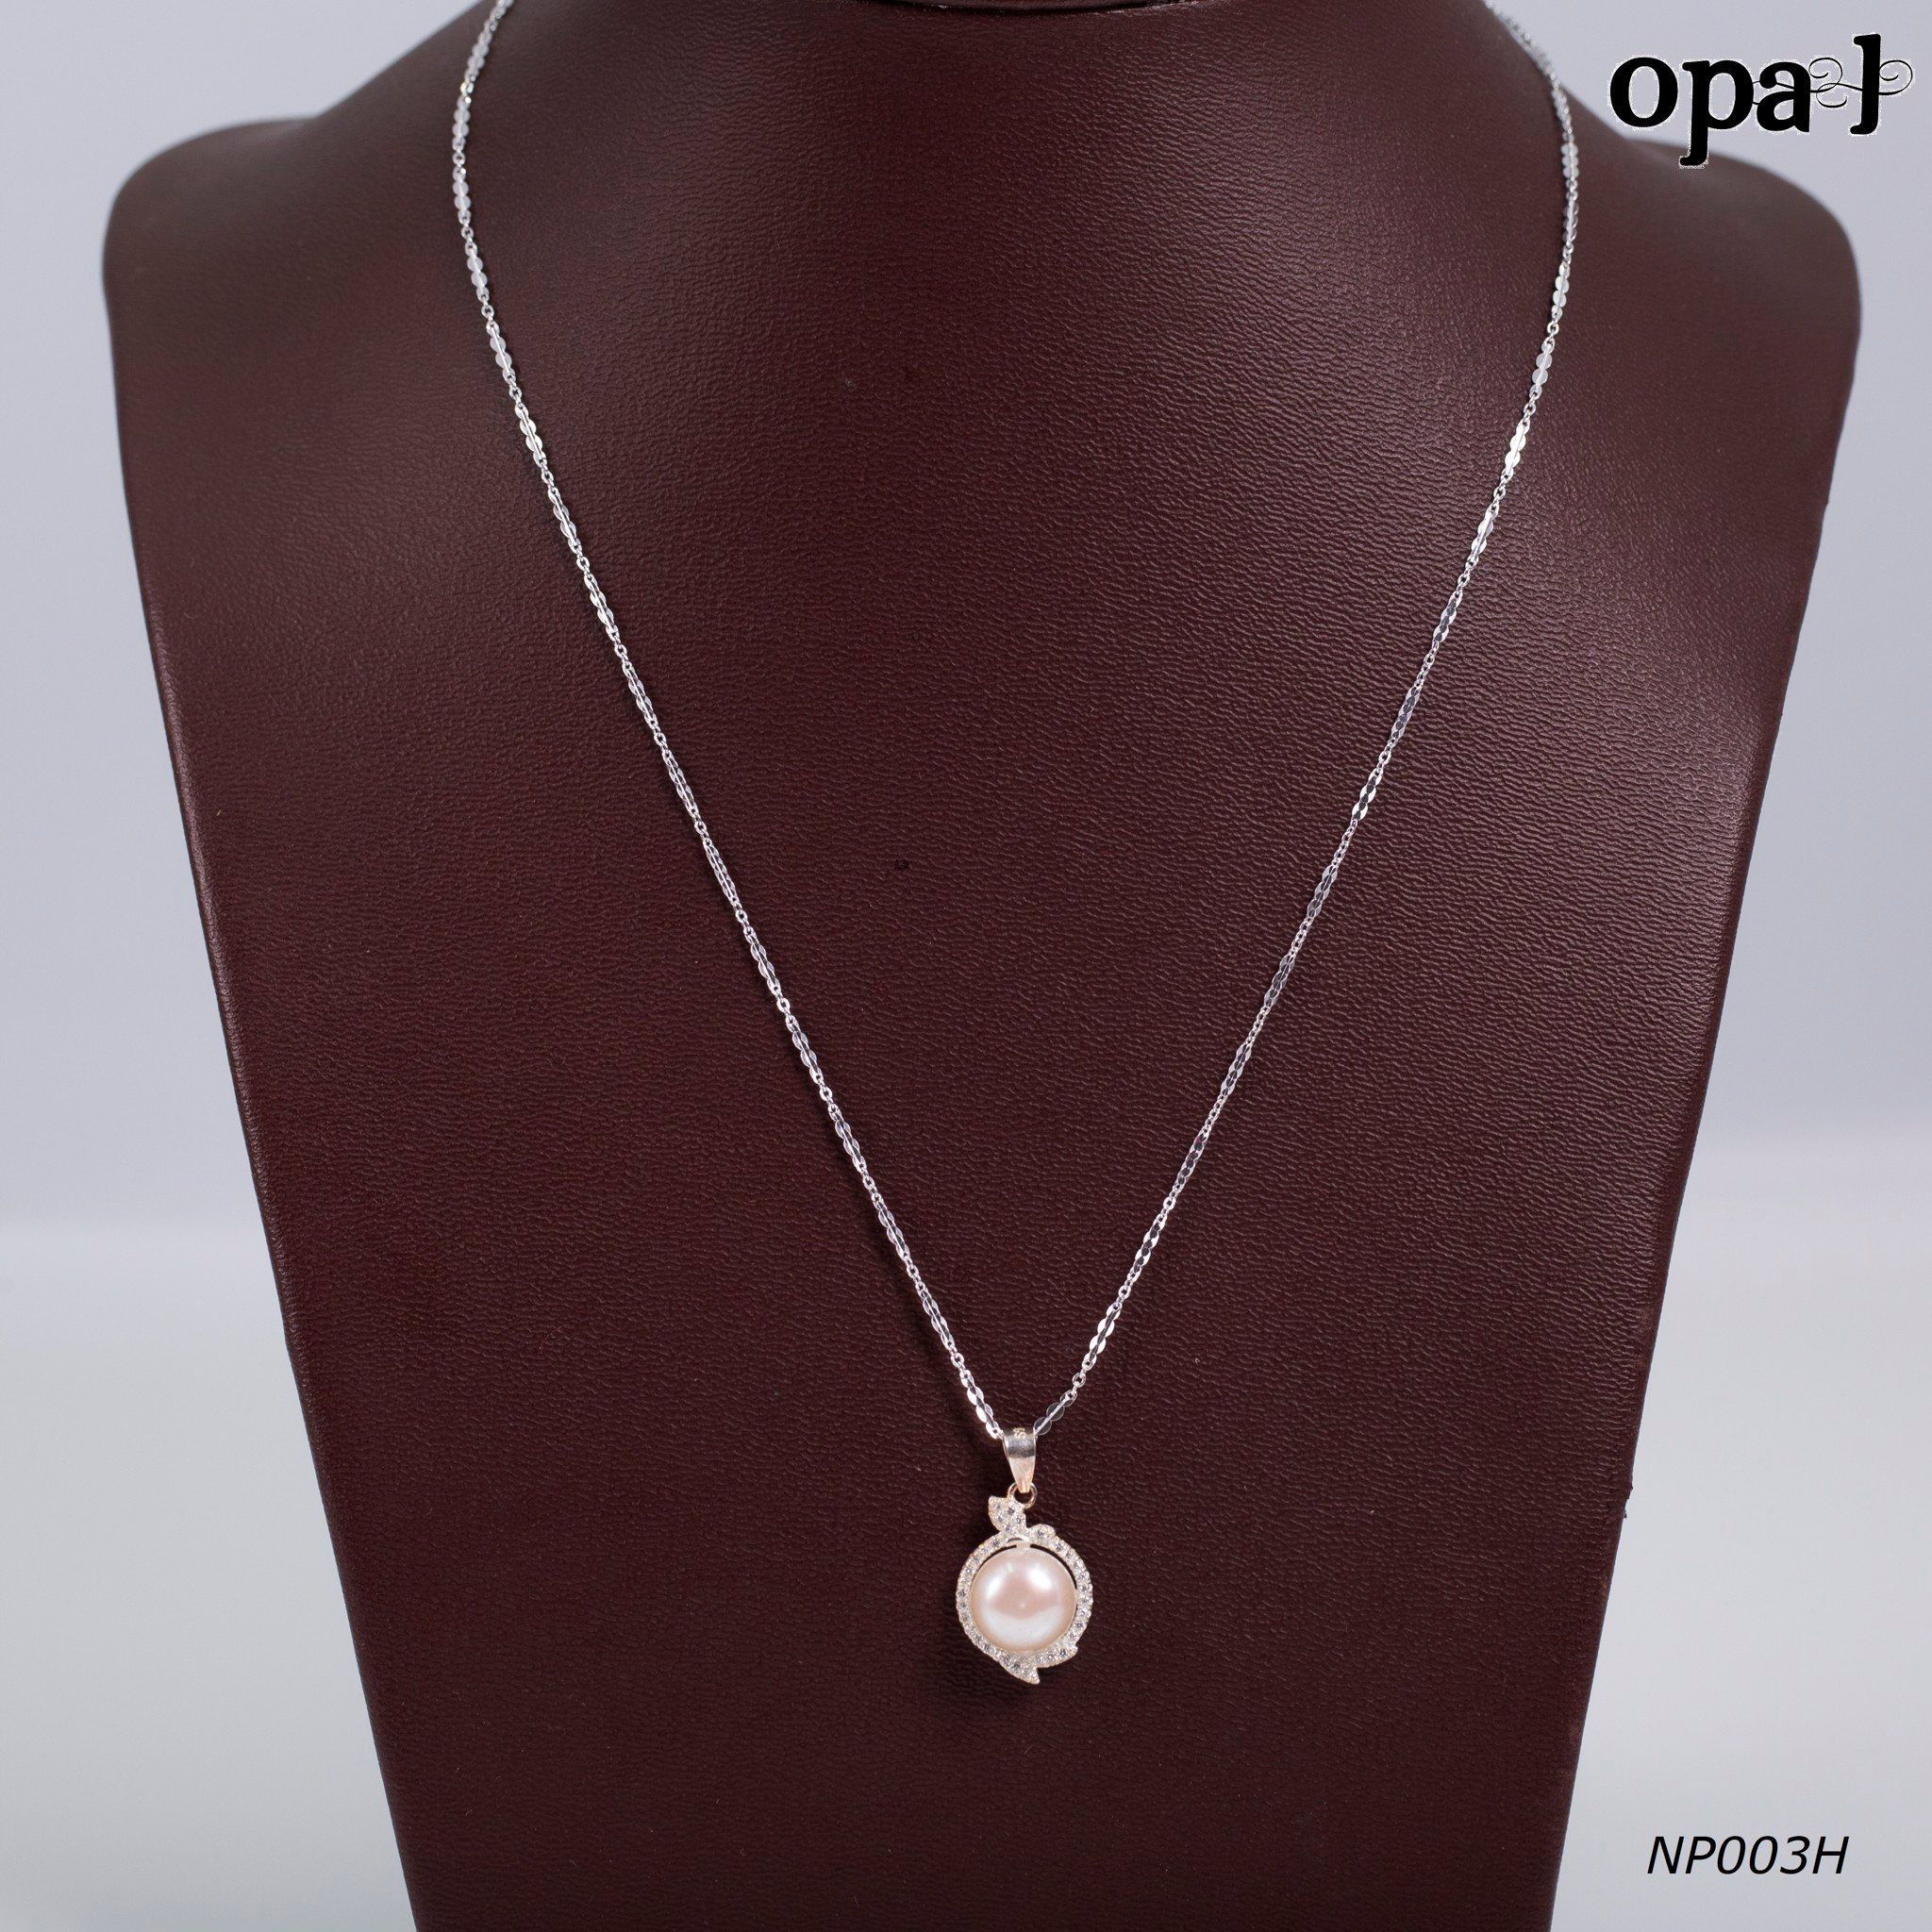  NP003H - Dây chuyền bạc kèm mặt ngọc trai OPAL 